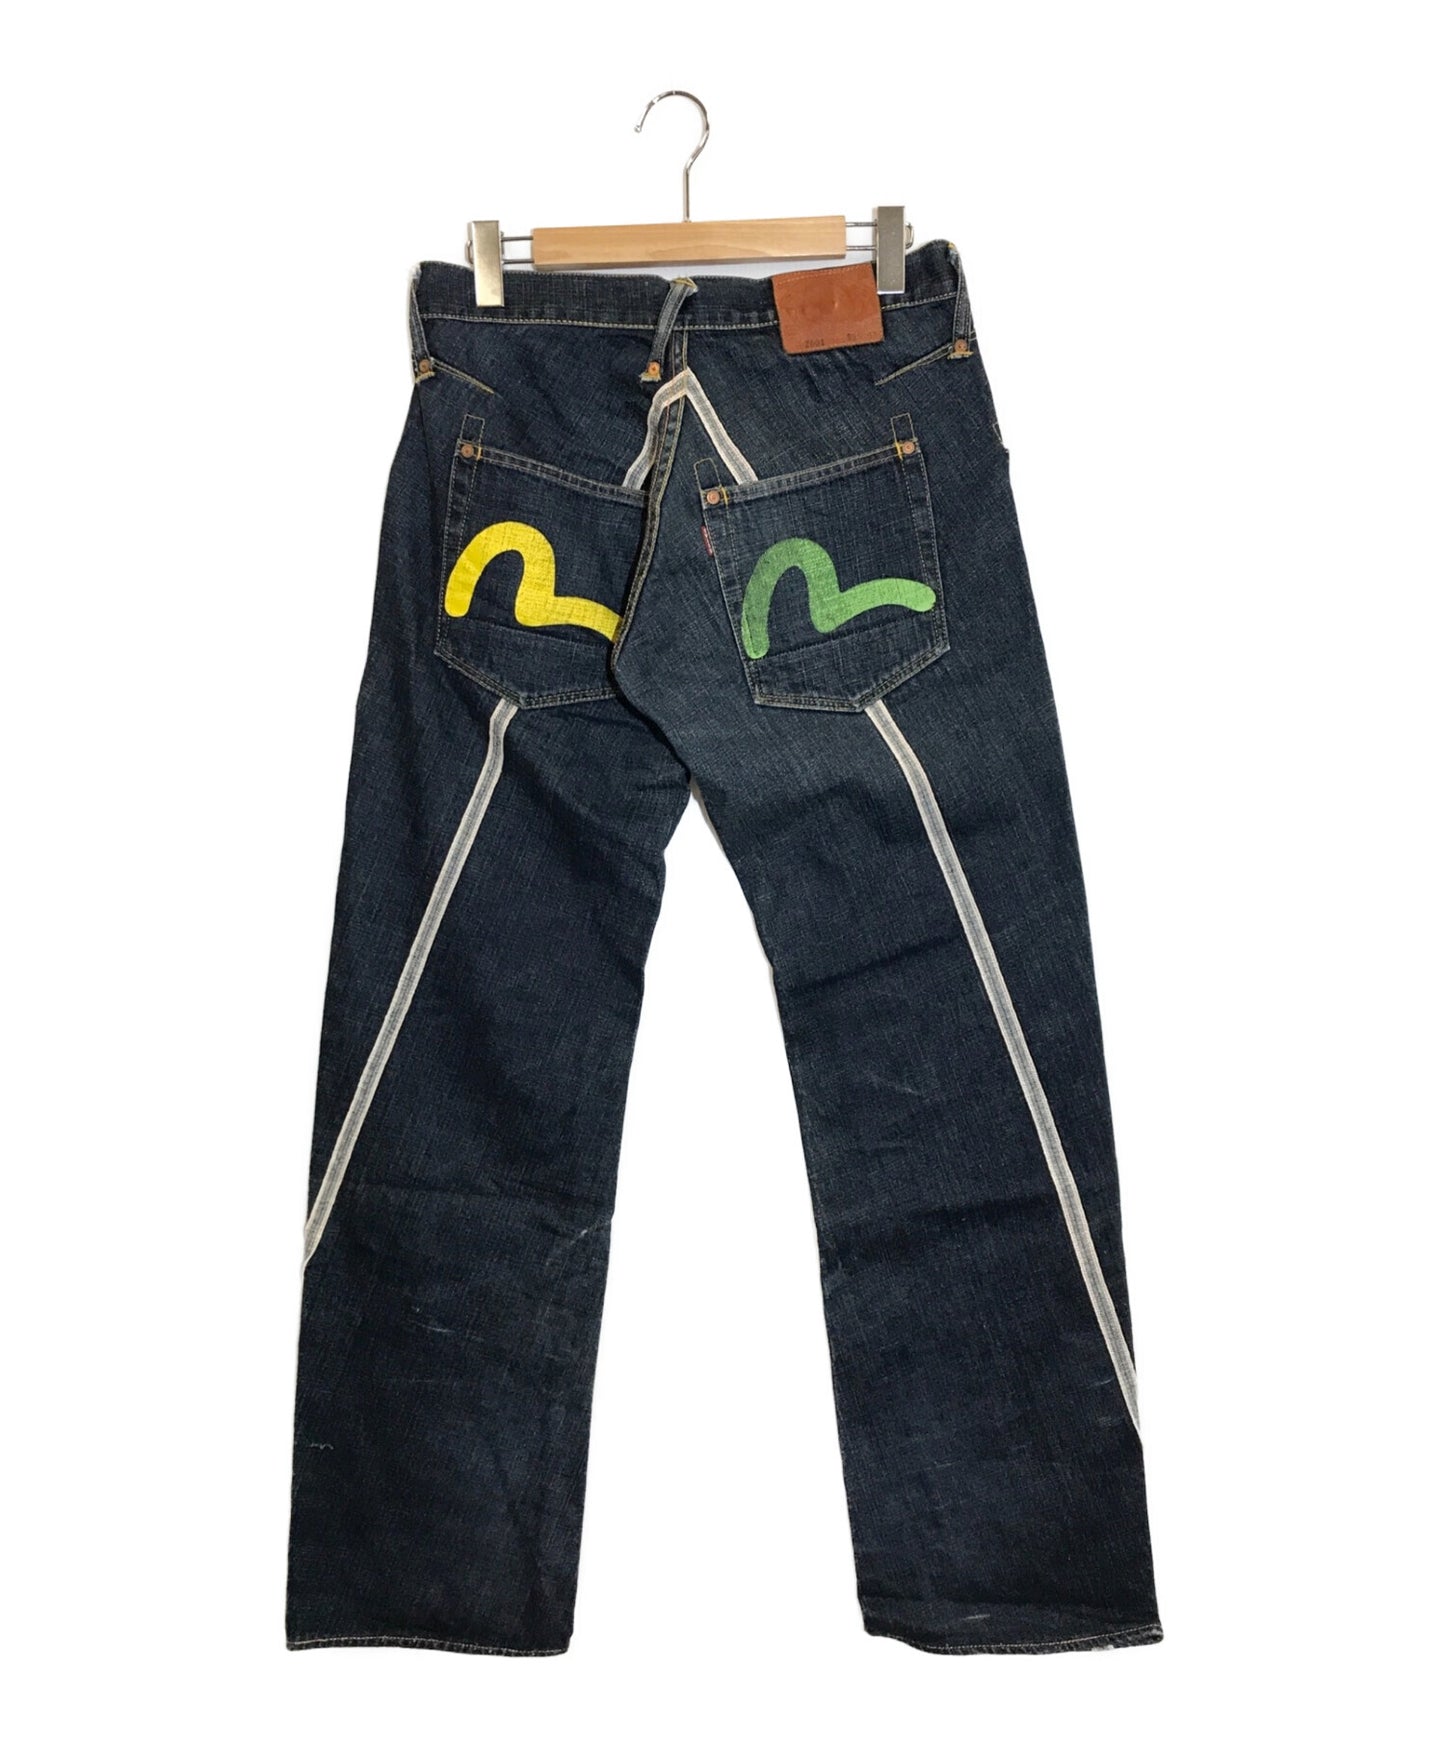 Evisu牛仔褲2001